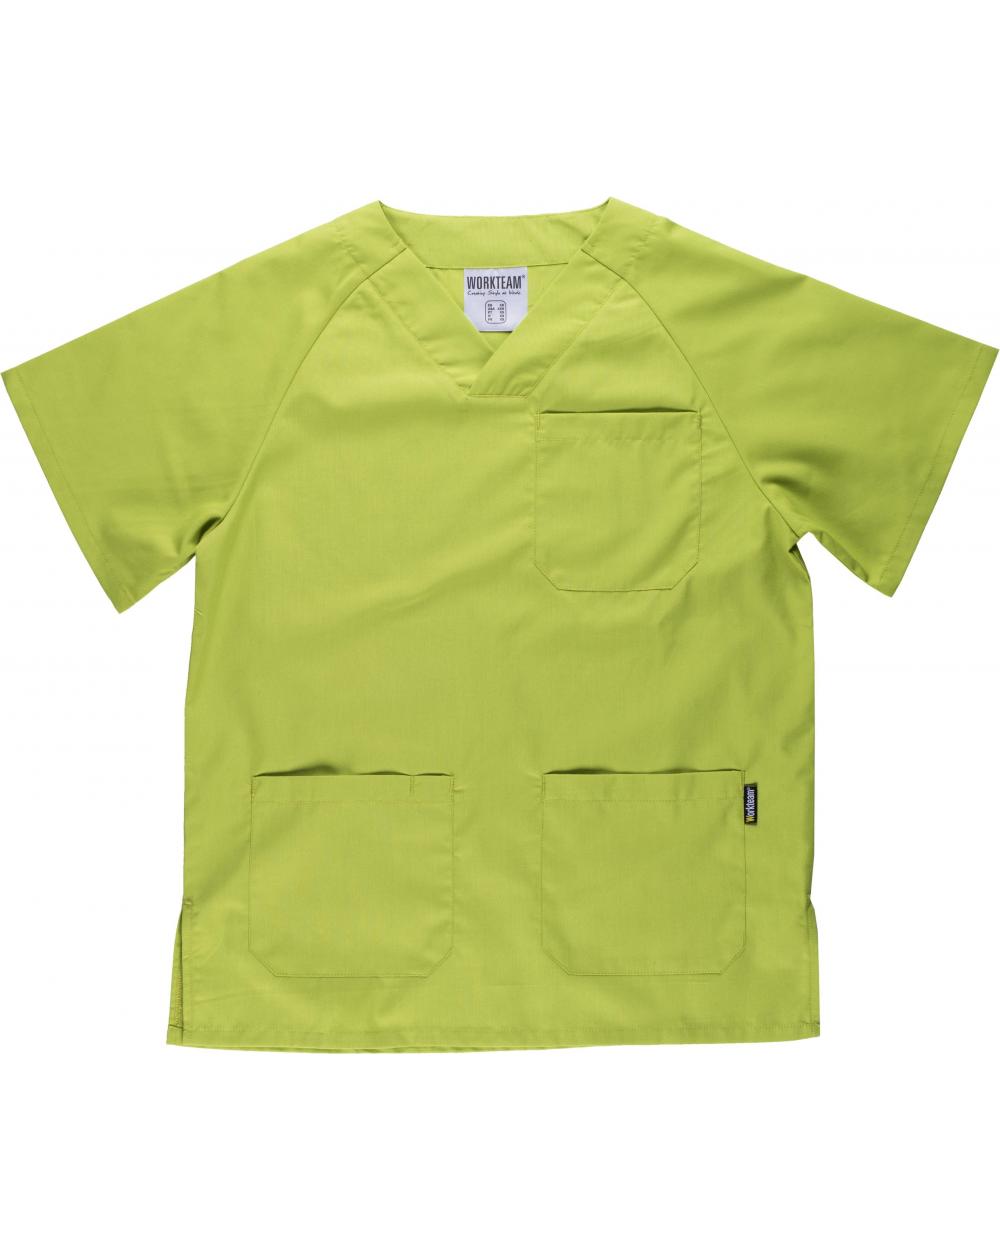 Comprar Conjunto pijama sanitario B9110 Verde Manzana workteam camisa delante